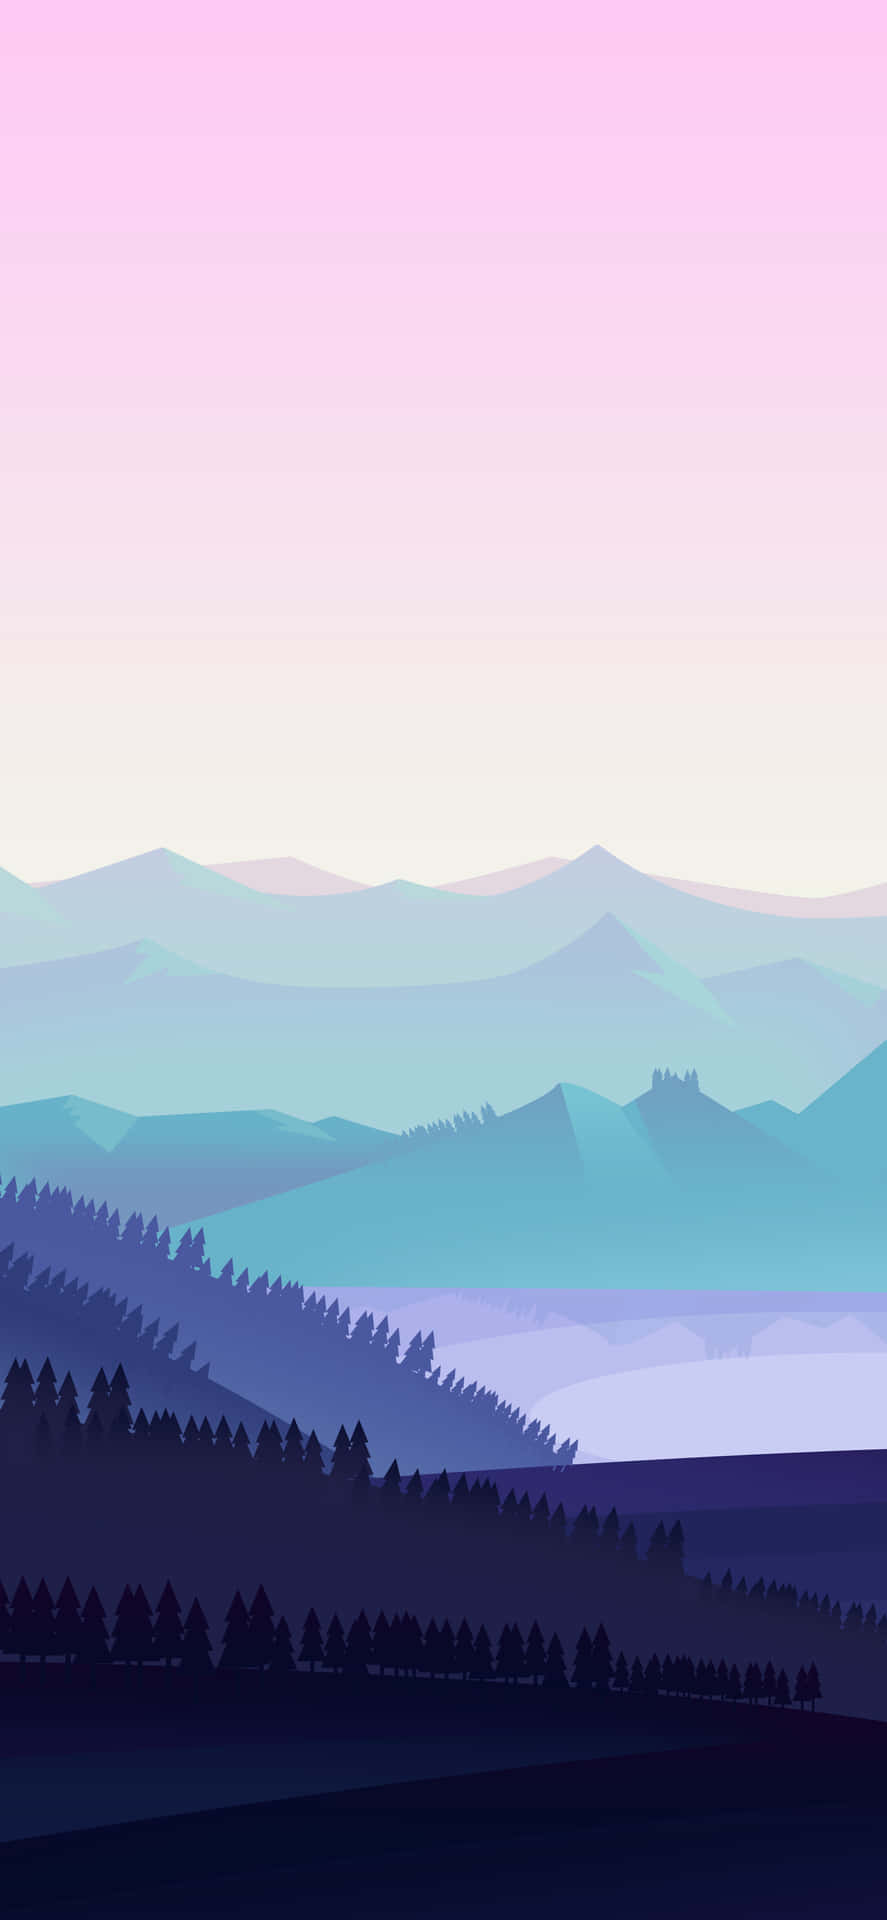 Crisp Mountains Digital Art [wallpaper] Wallpaper